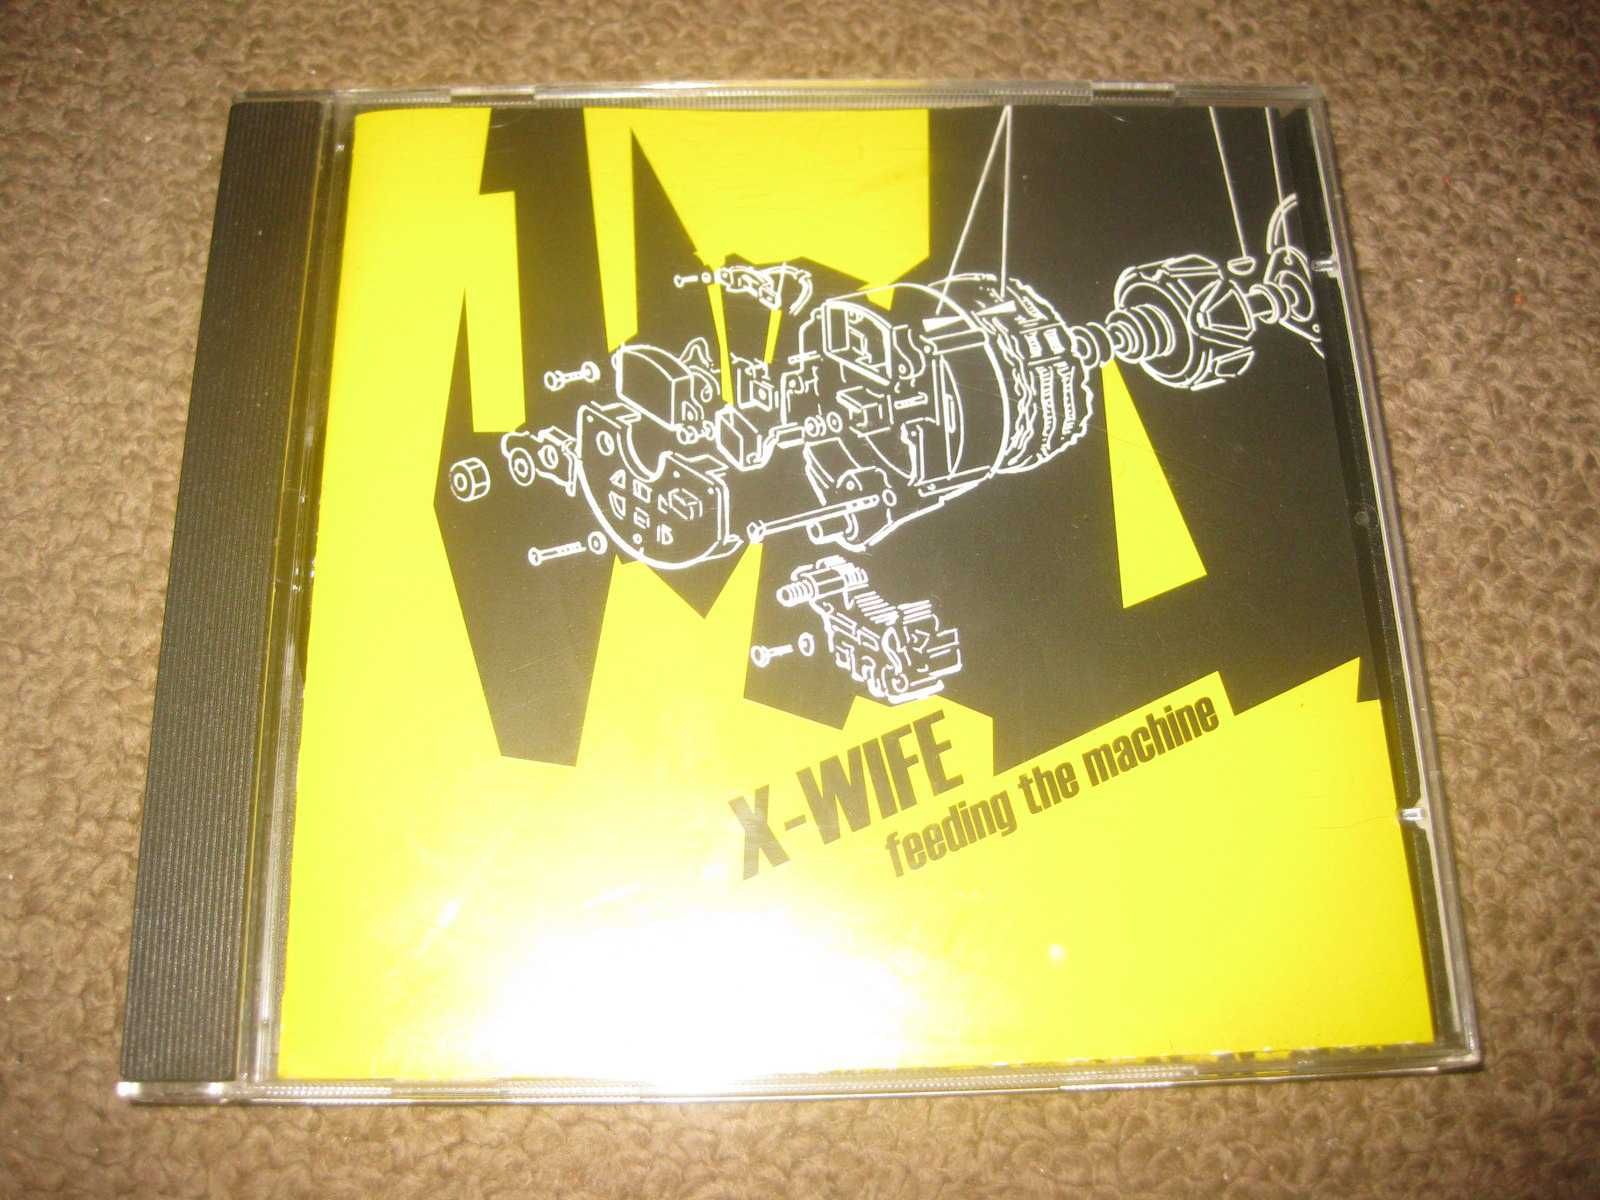 CD dos X-Wife "Feeding The Machine" Portes Grátis!